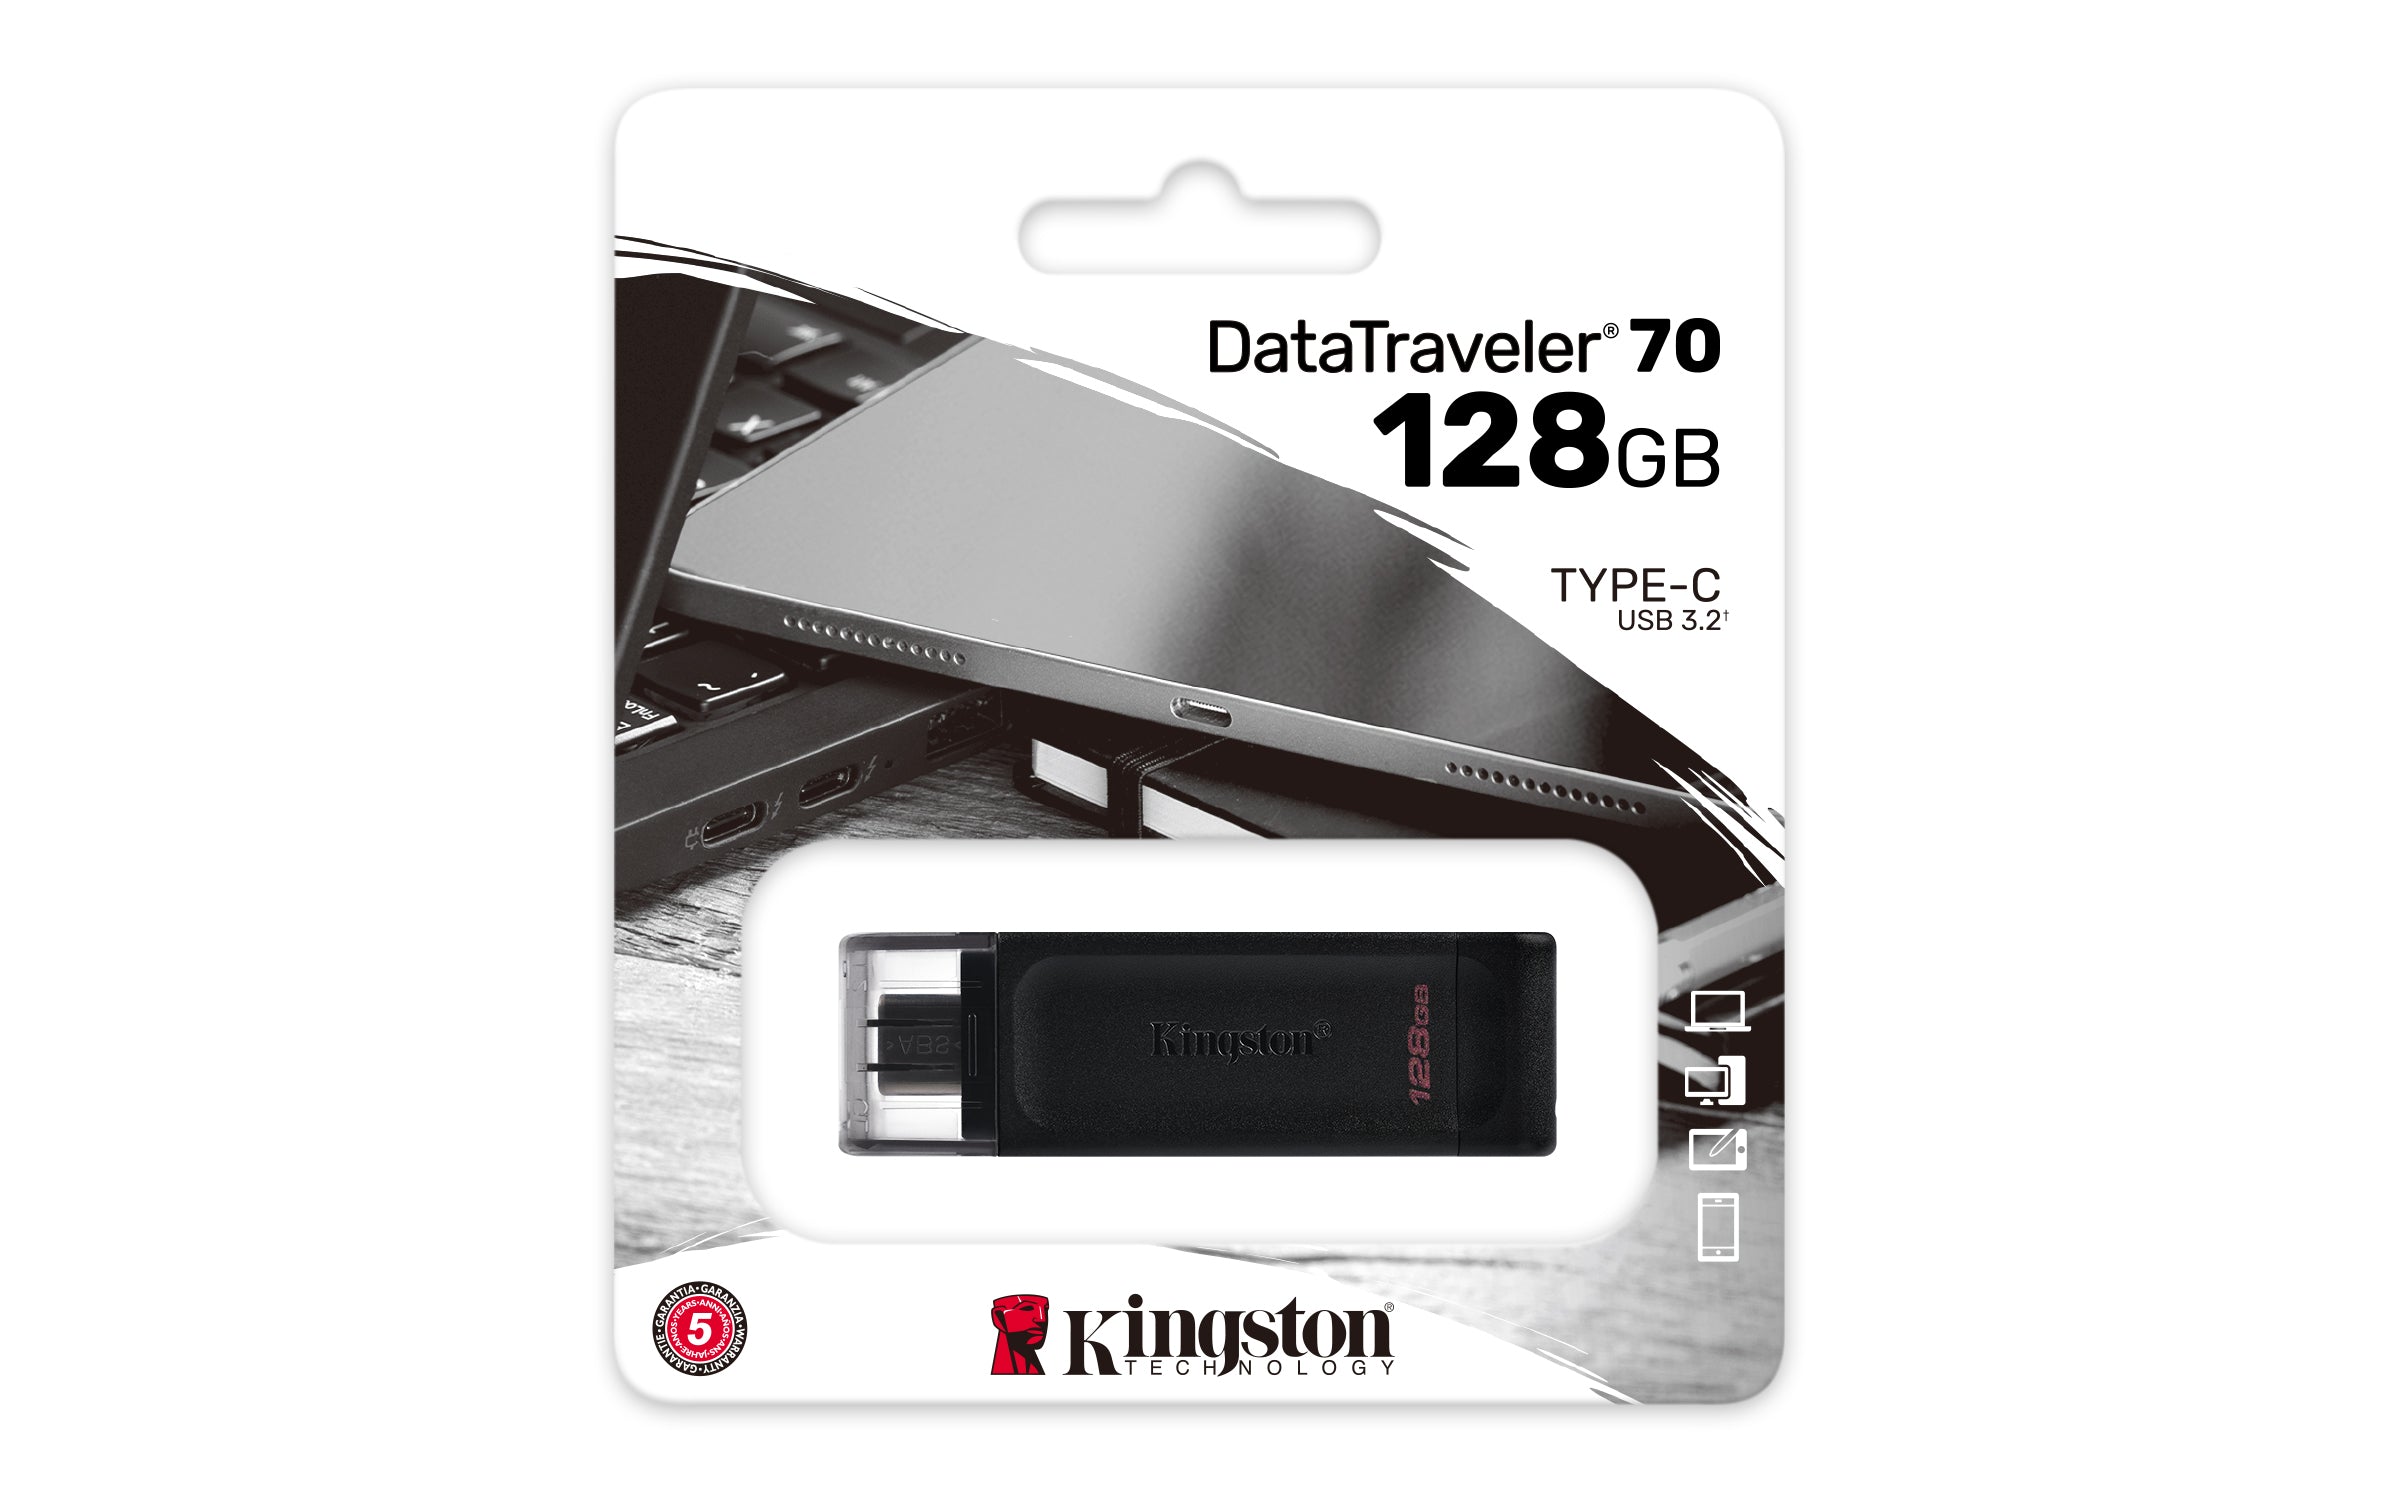 DT70/128GB - Pen drive de padrão velocidade 3.2 Geração